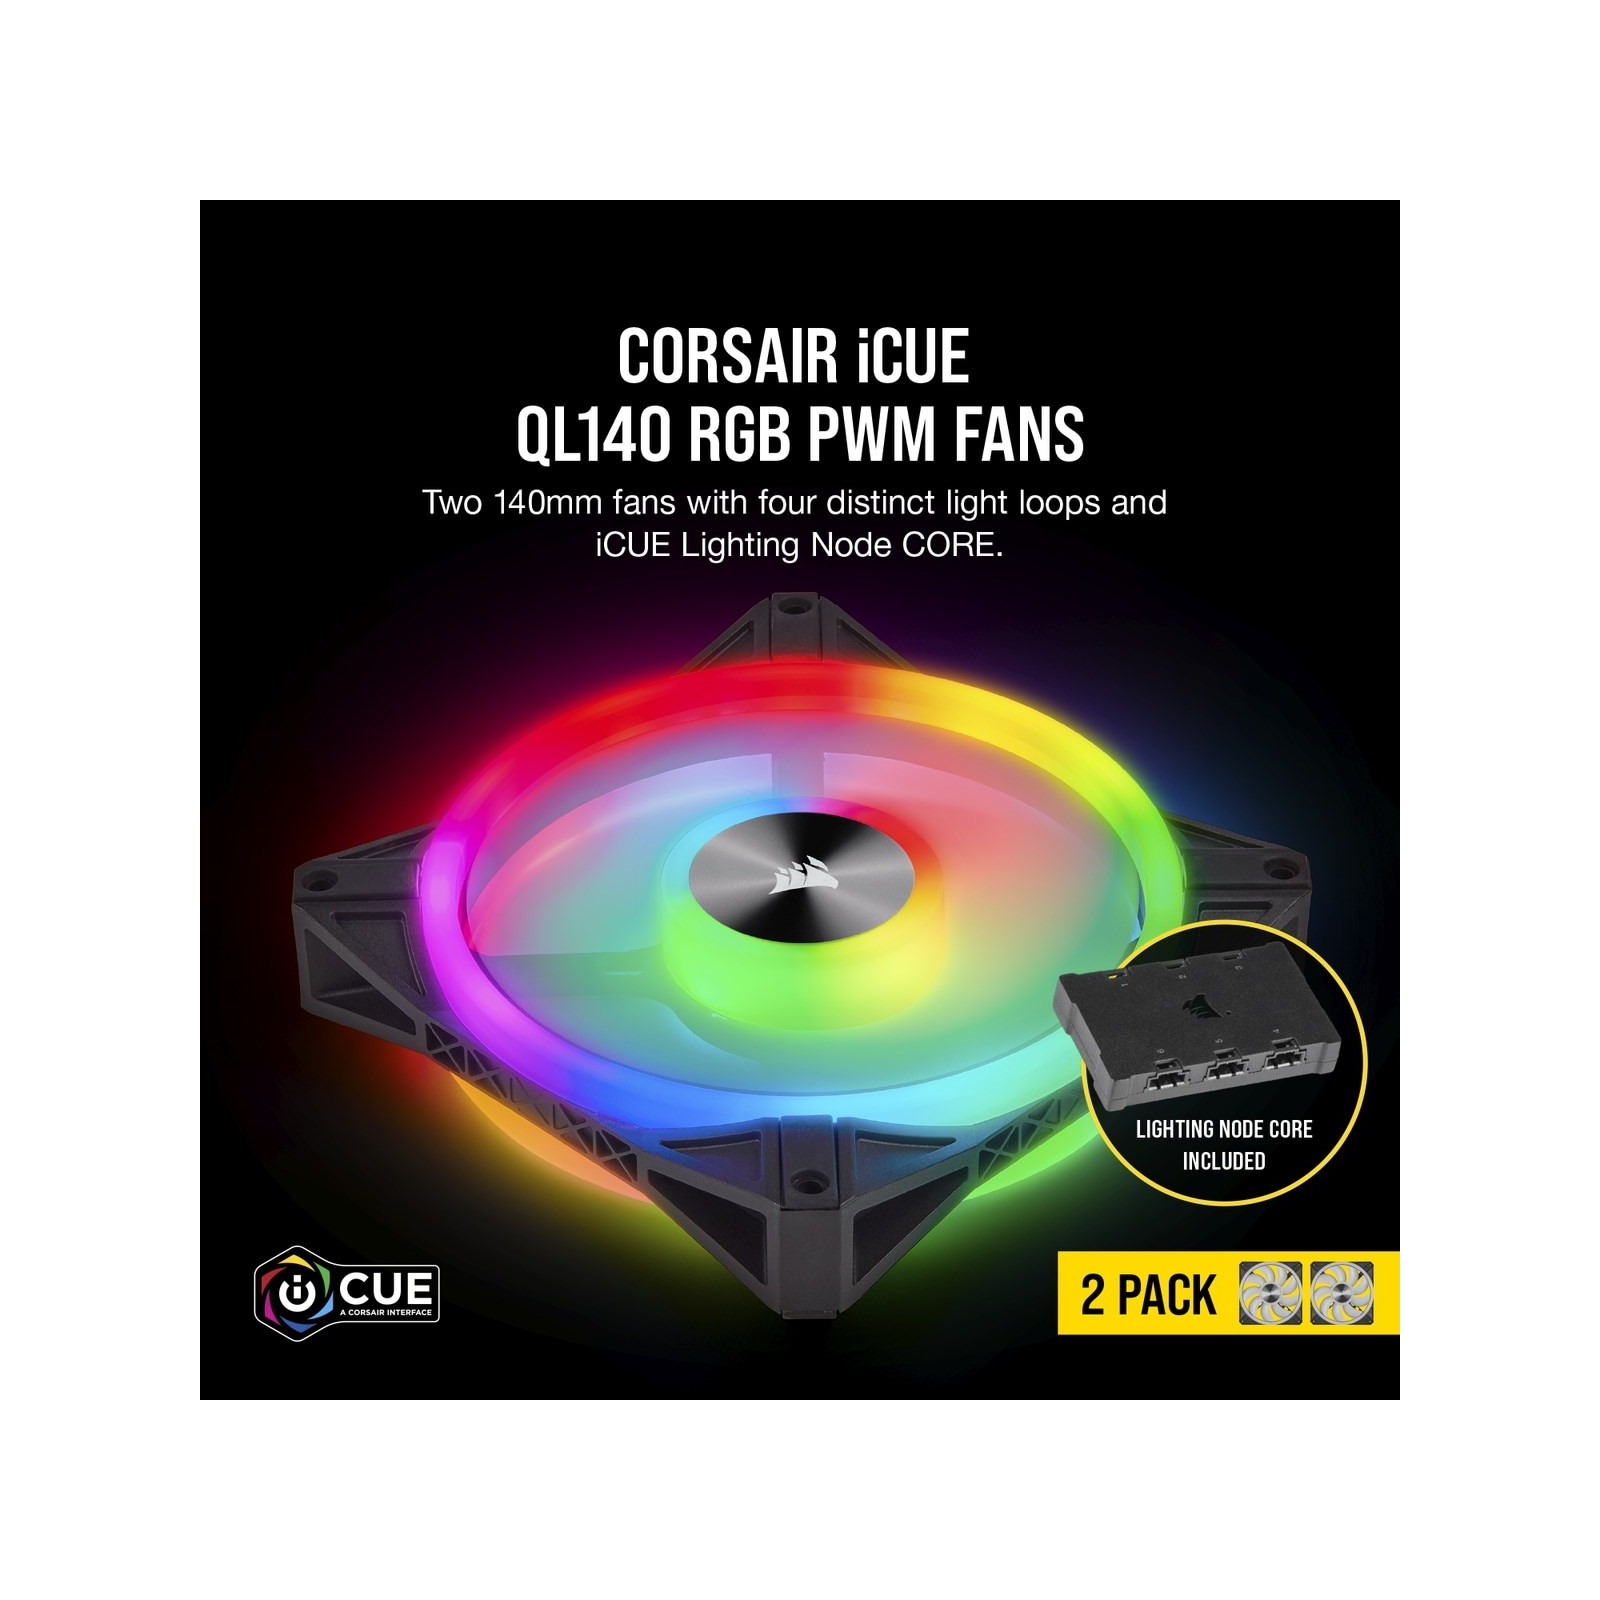 Кулер до корпусу Corsair QL Series, QL140 RGB, 140mm RGB LED Fan (CO-9050100-WW) зображення 7